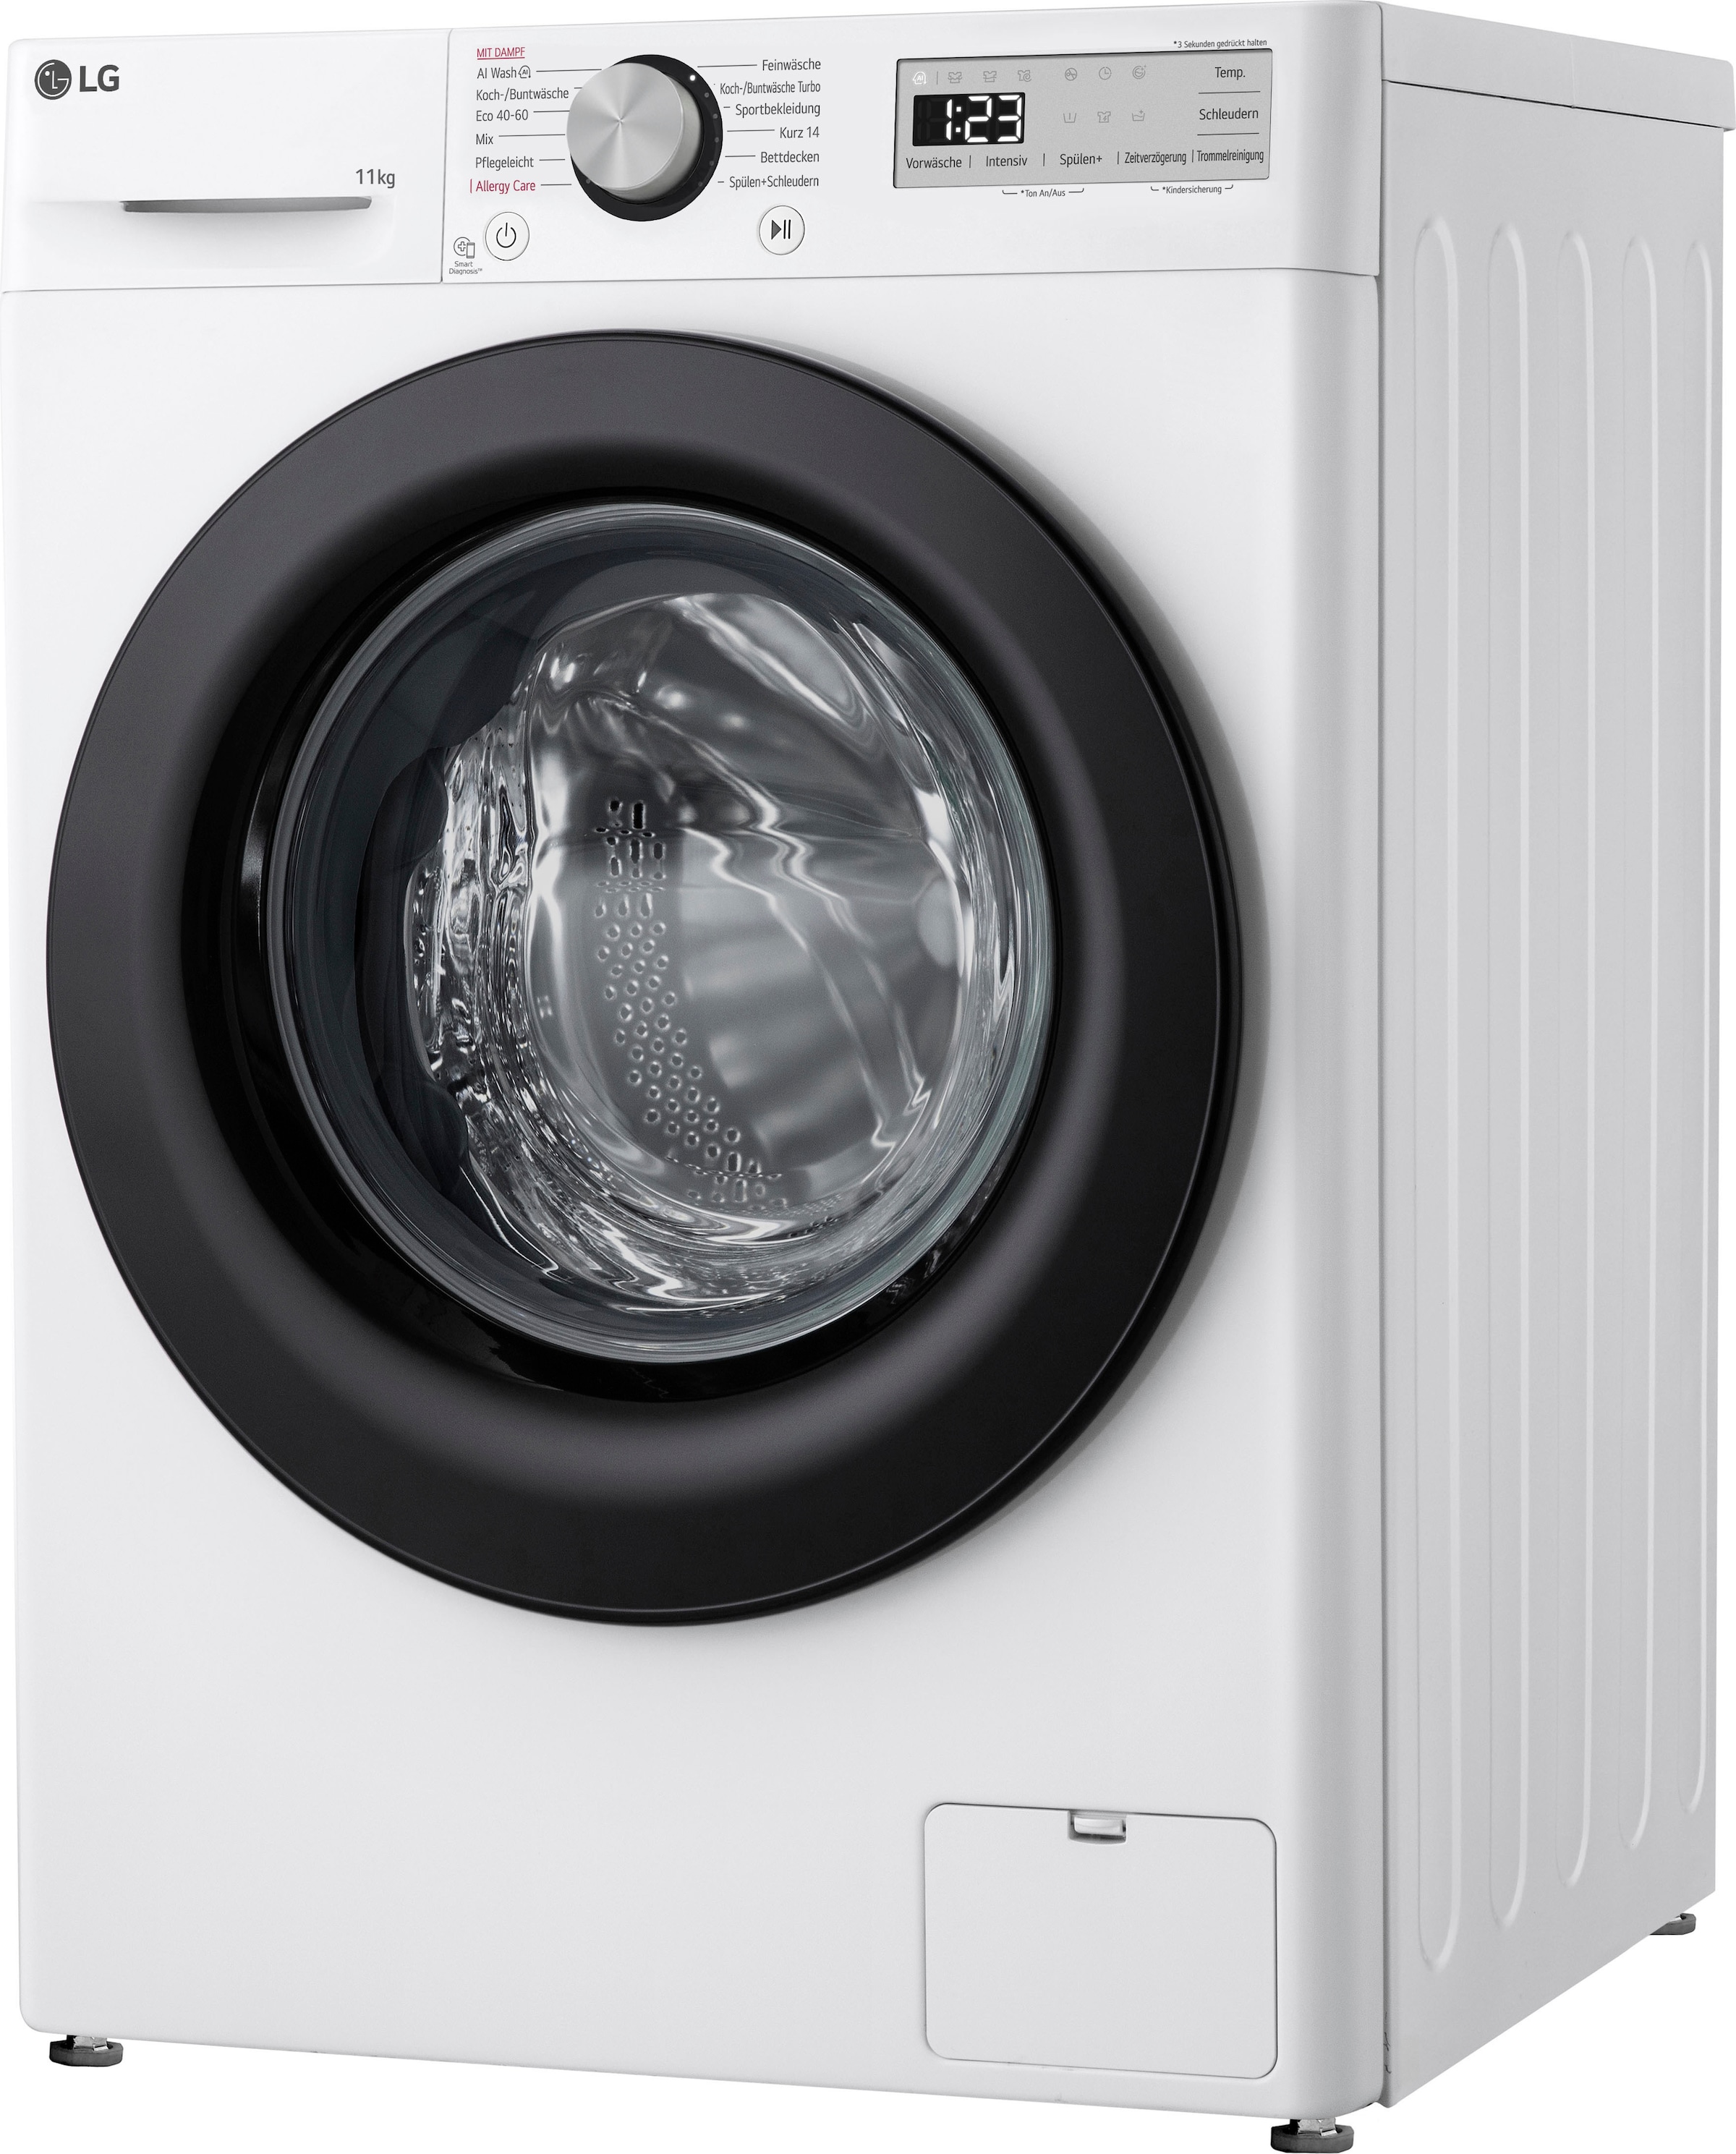 LG Waschmaschine »F4WR4911P«, Serie 5, F4WR4911P, 11 kg, 1400 U/min, Steam-Funktion, 4 Jahre Garantie inklusive